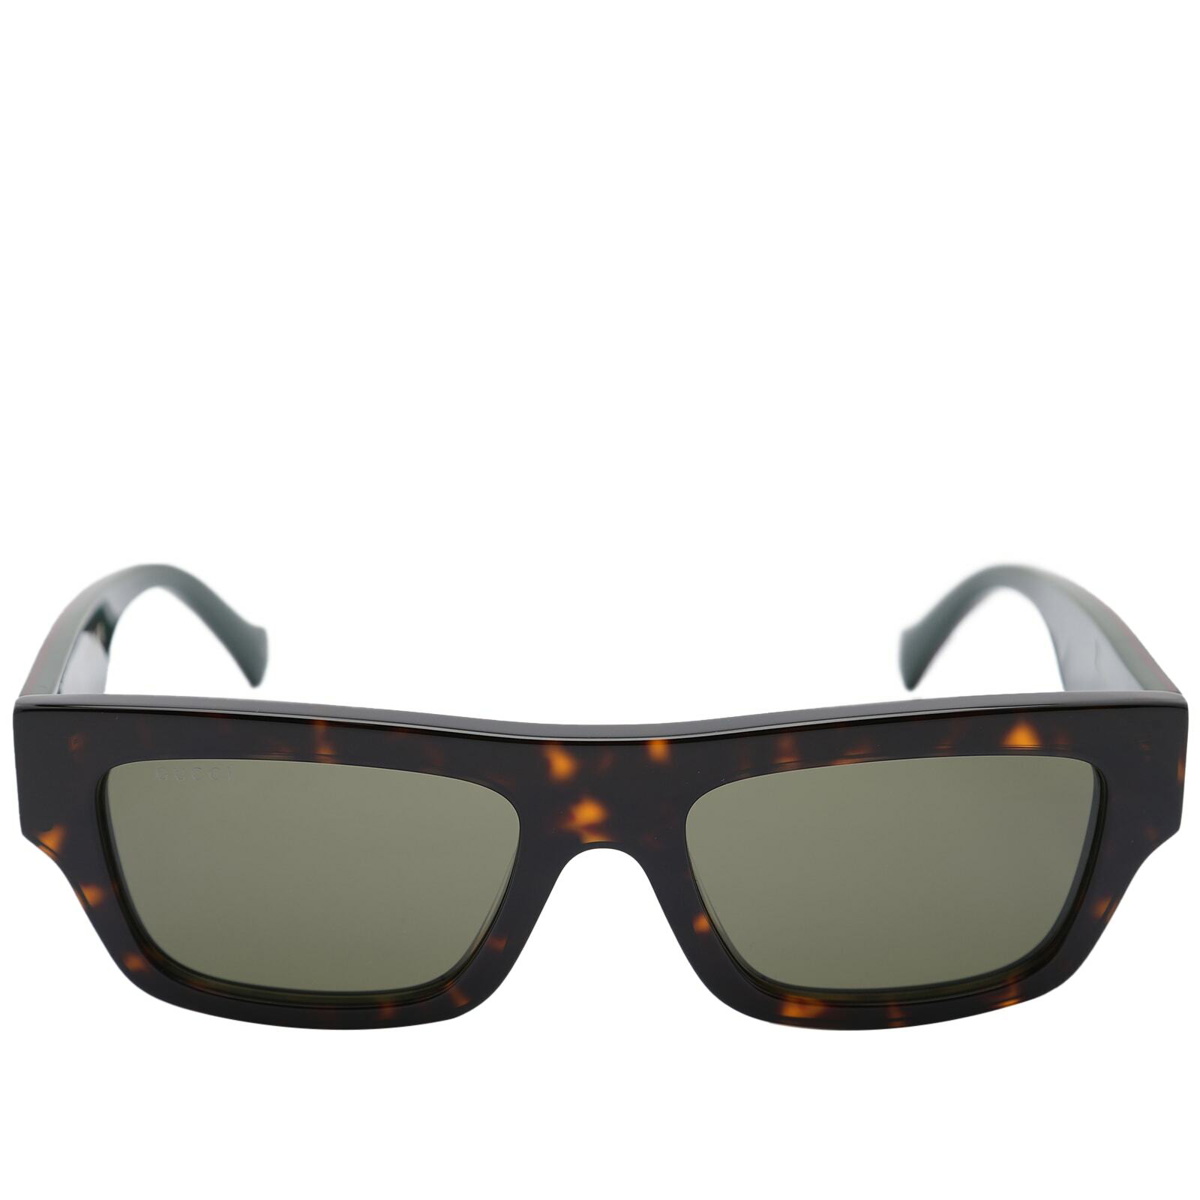 Gucci Men's Eyewear GG1301S Sunglasses in Havana/Green Gucci